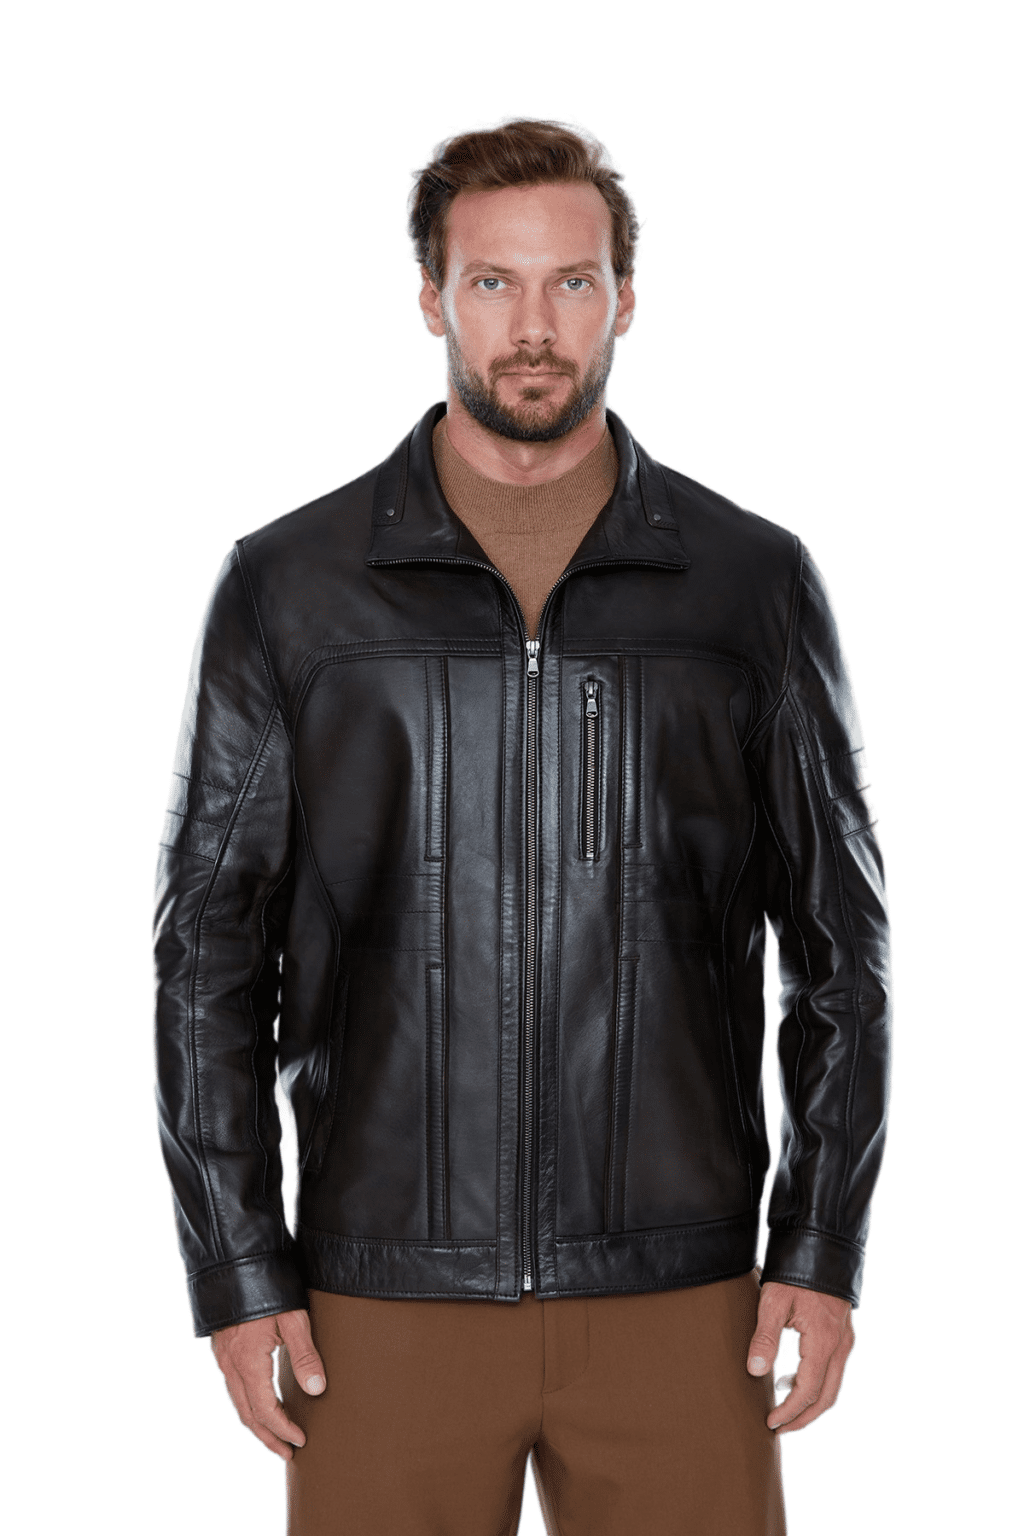 100% Mens Black Leather Jacket Leather Coat & Vest at Affordable Price